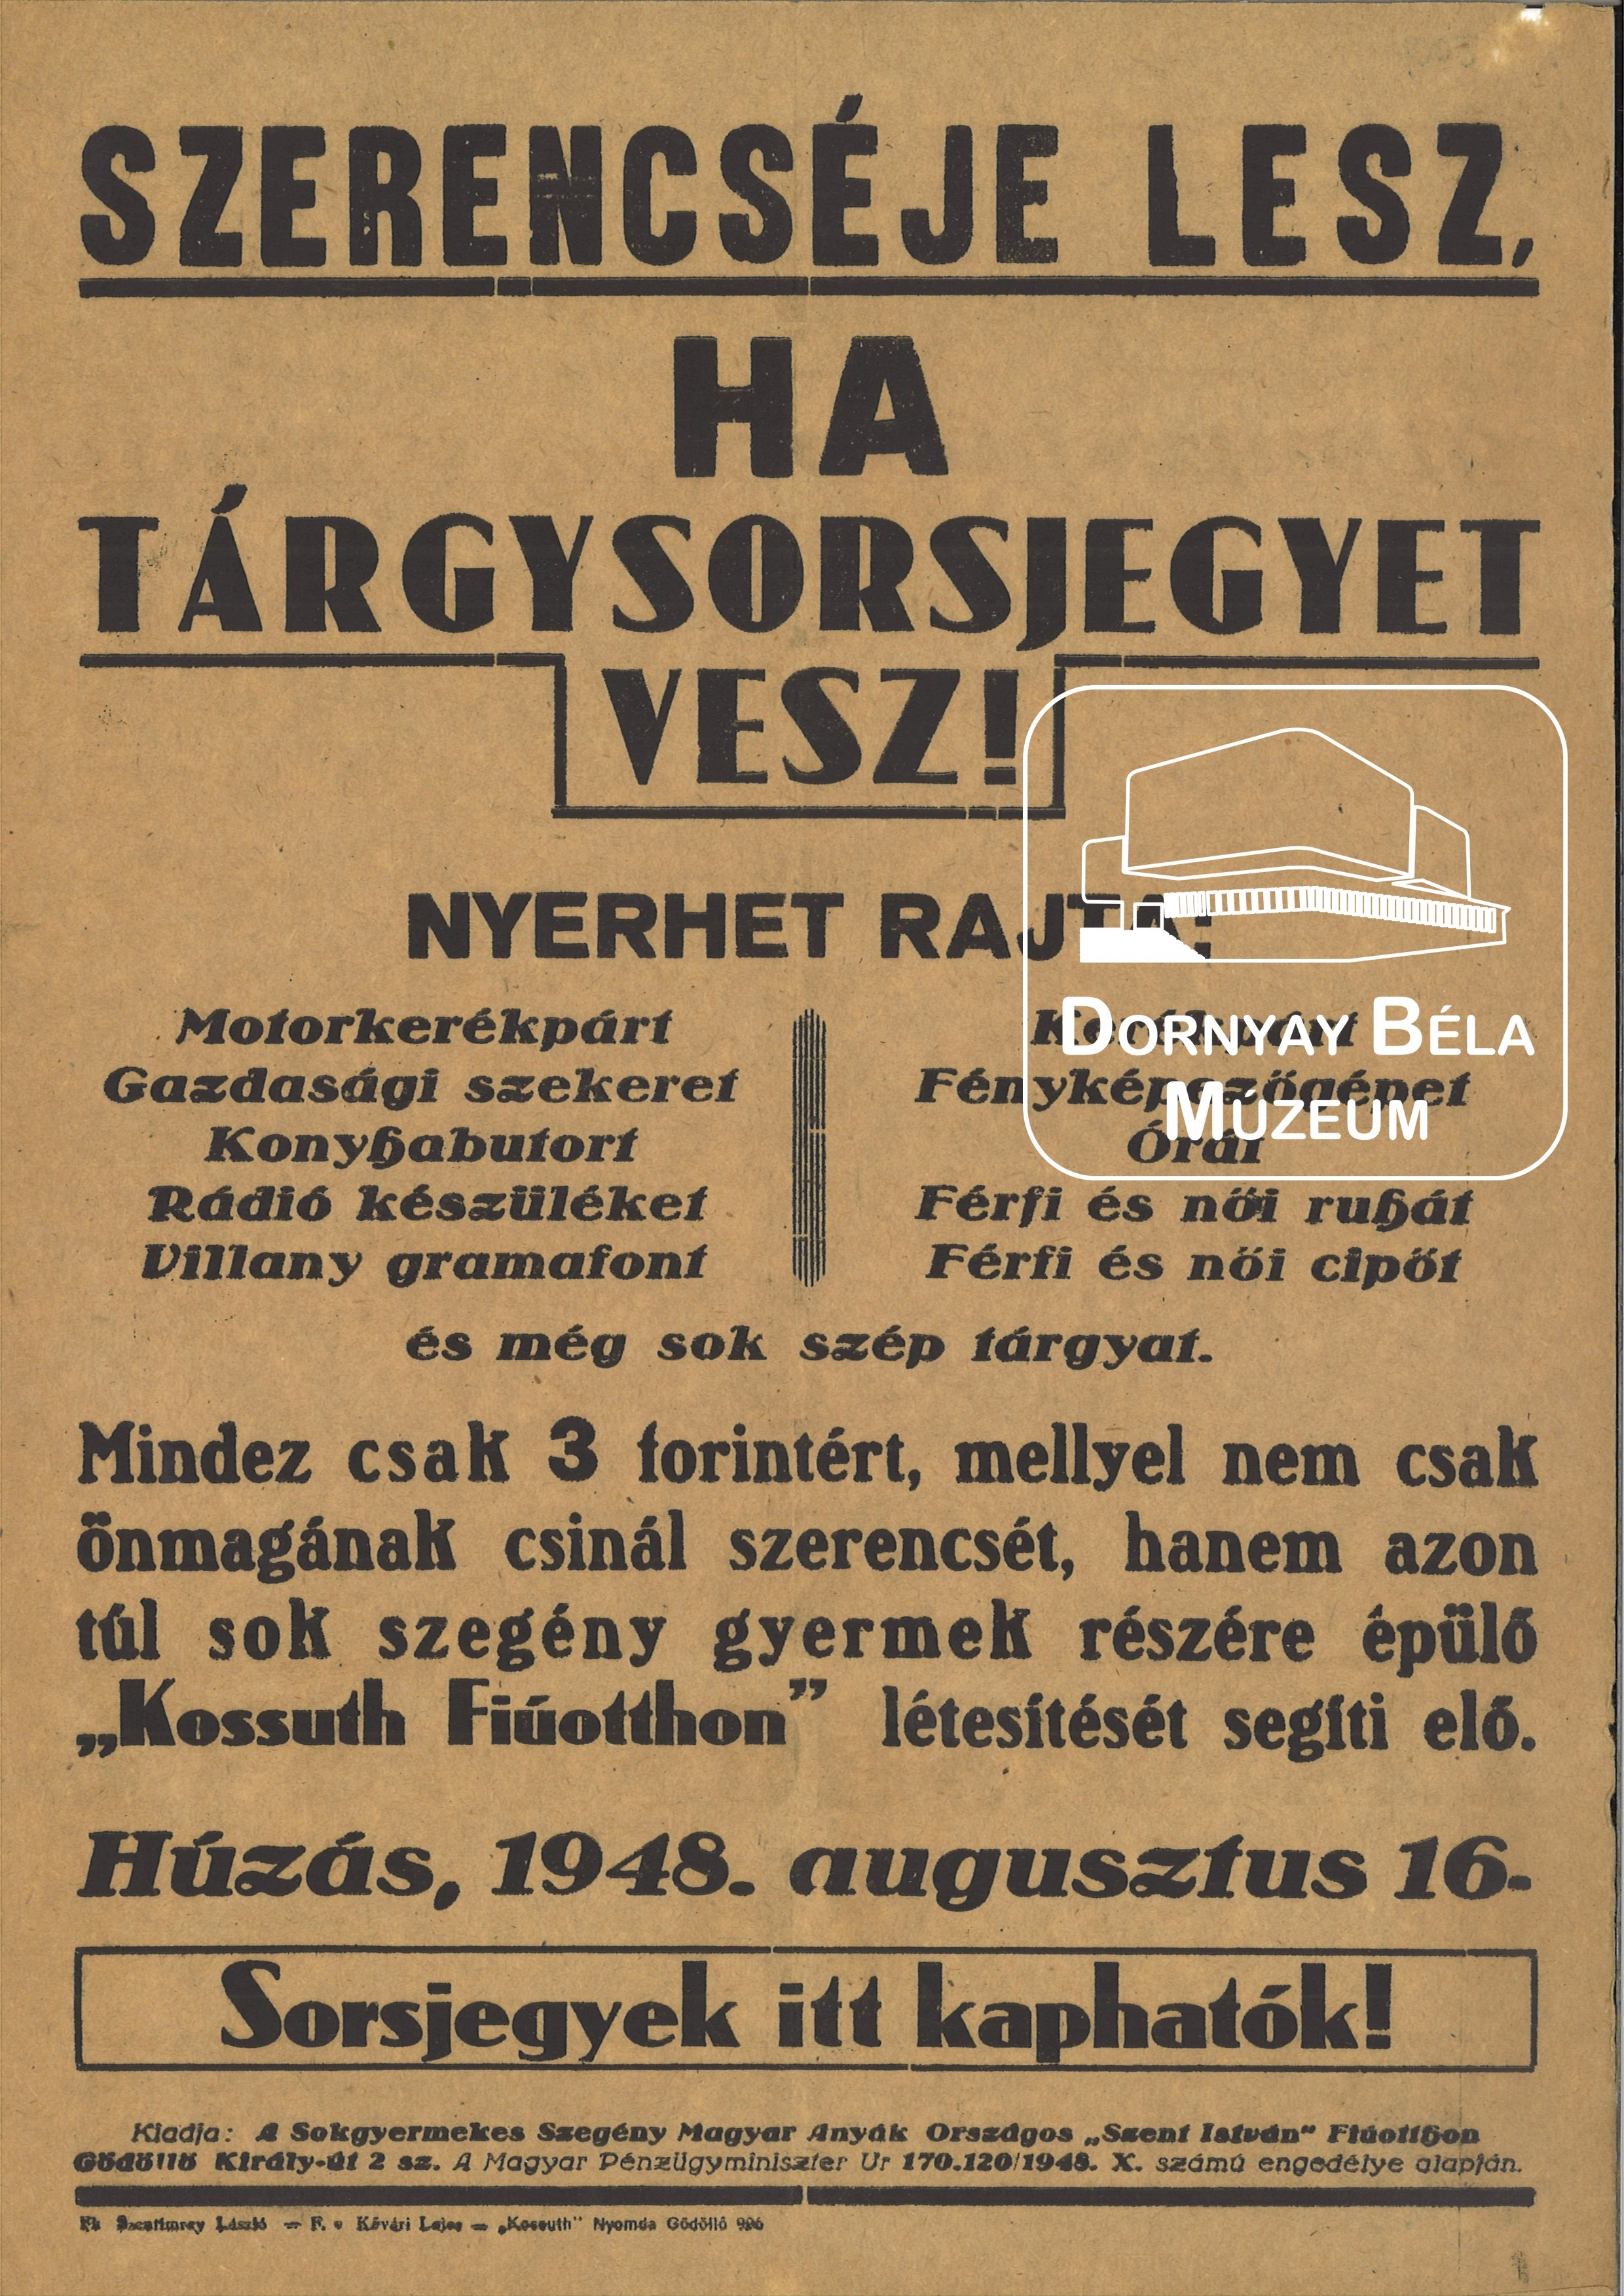 Tárgy-sorsjegy propagálás. (Dornyay Béla Múzeum, Salgótarján CC BY-NC-SA)